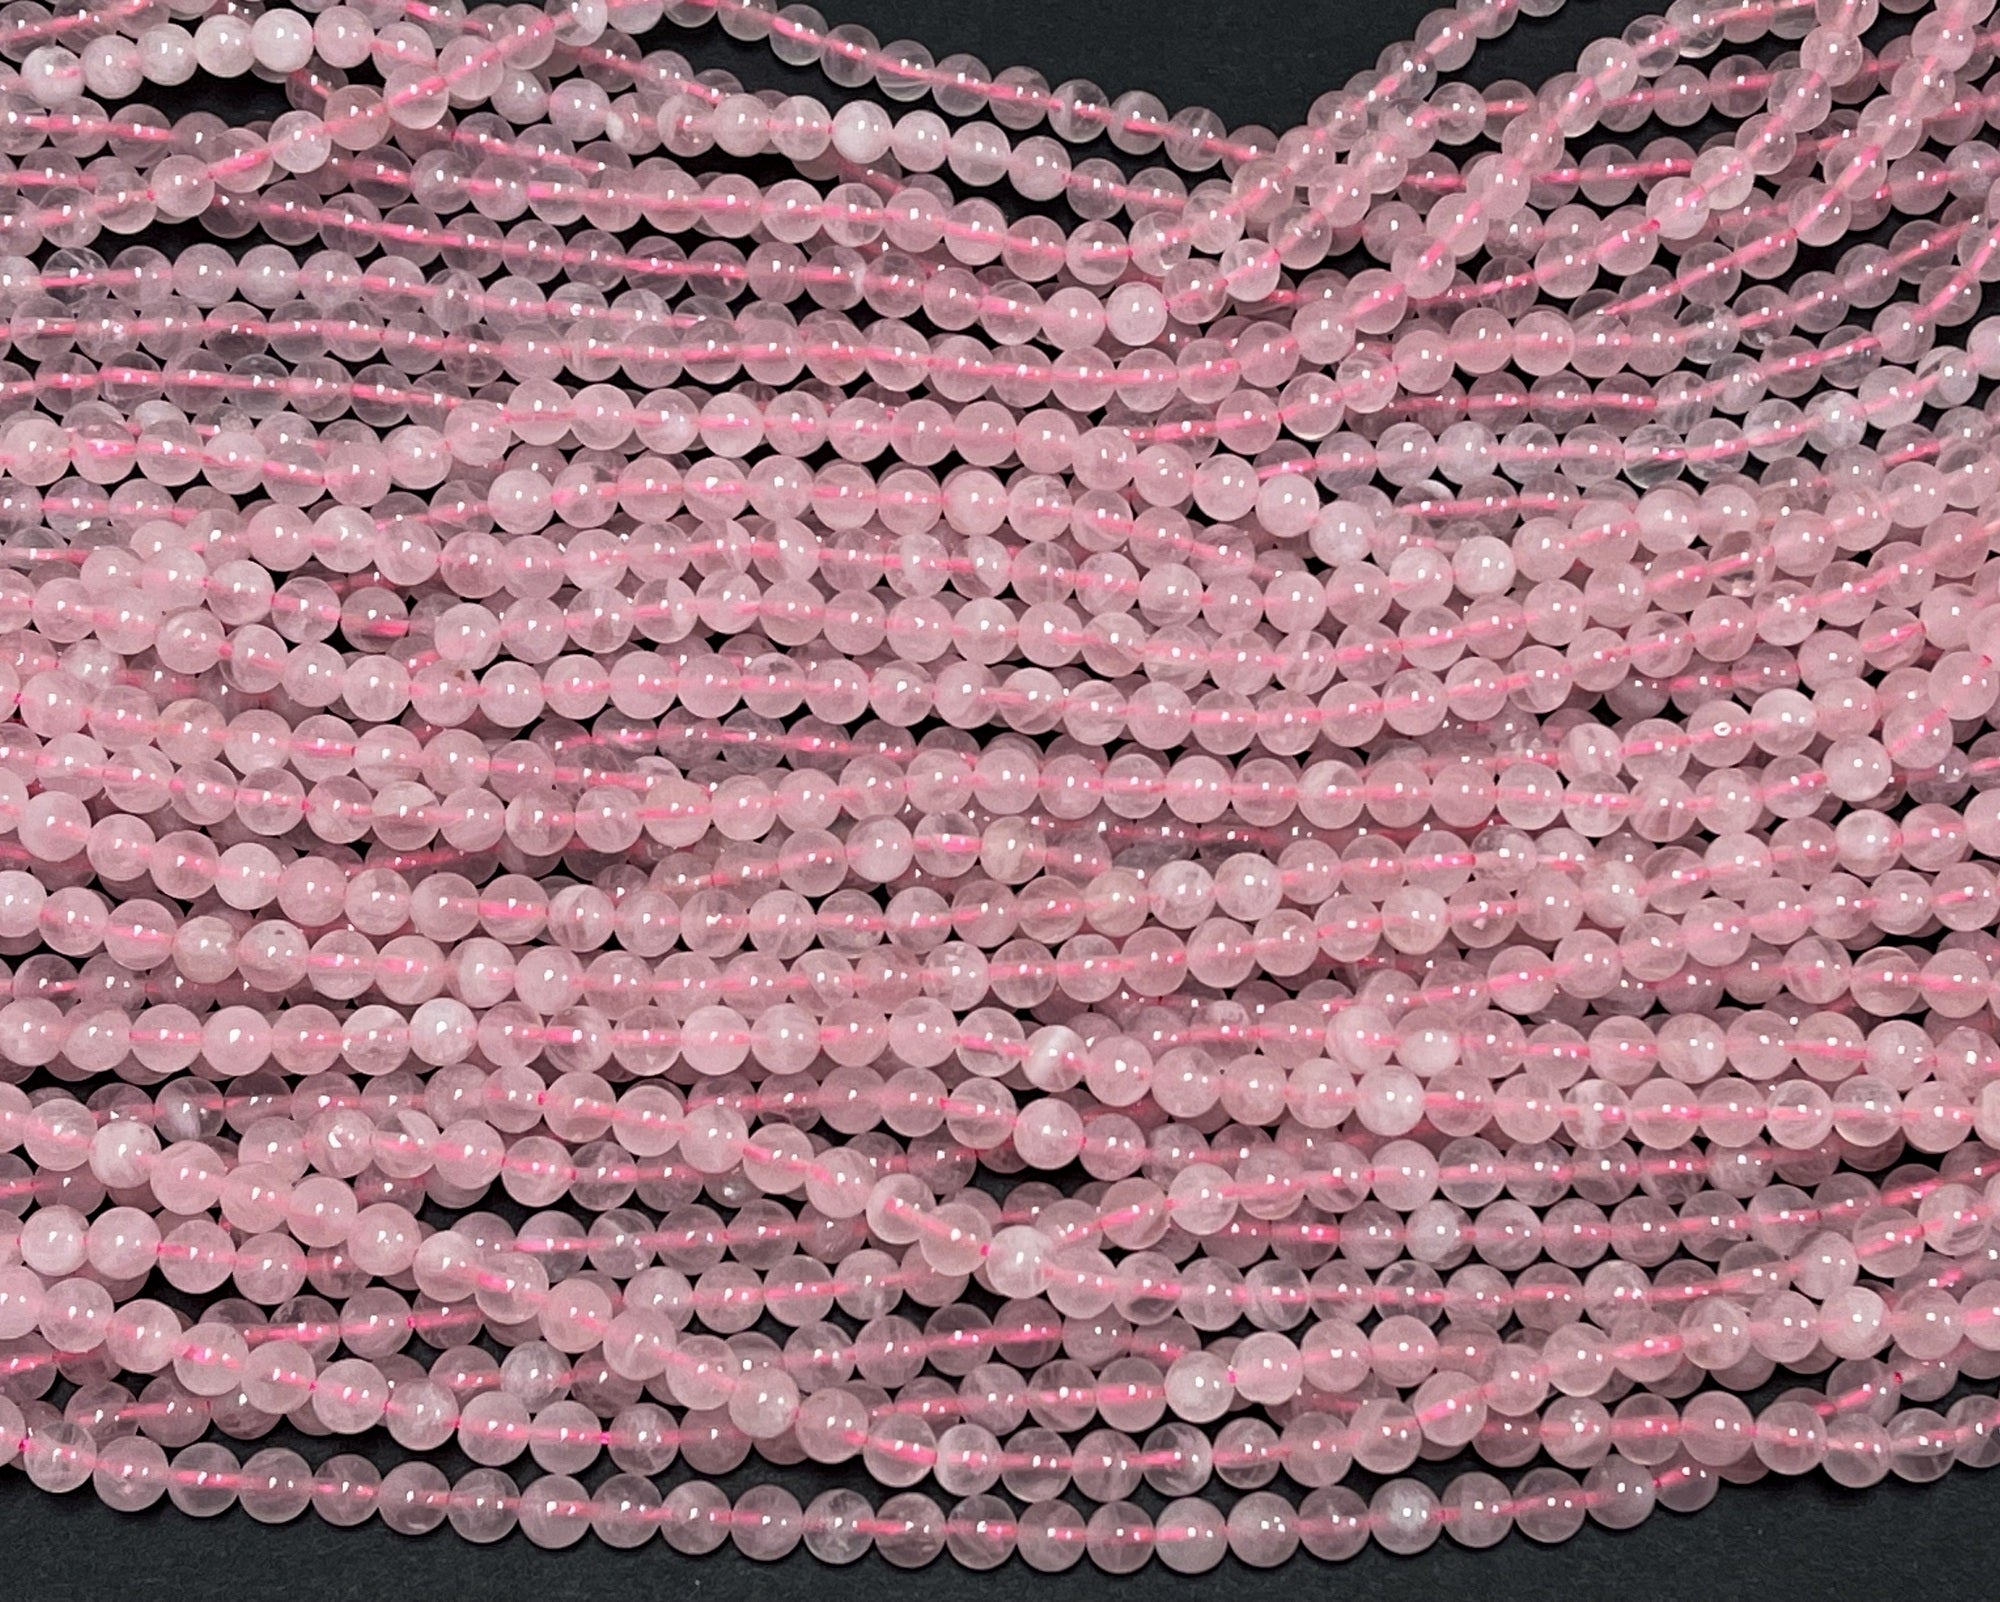 Madagascar Rose Quartz 6mm round natural gemstone beads 15.5" strand